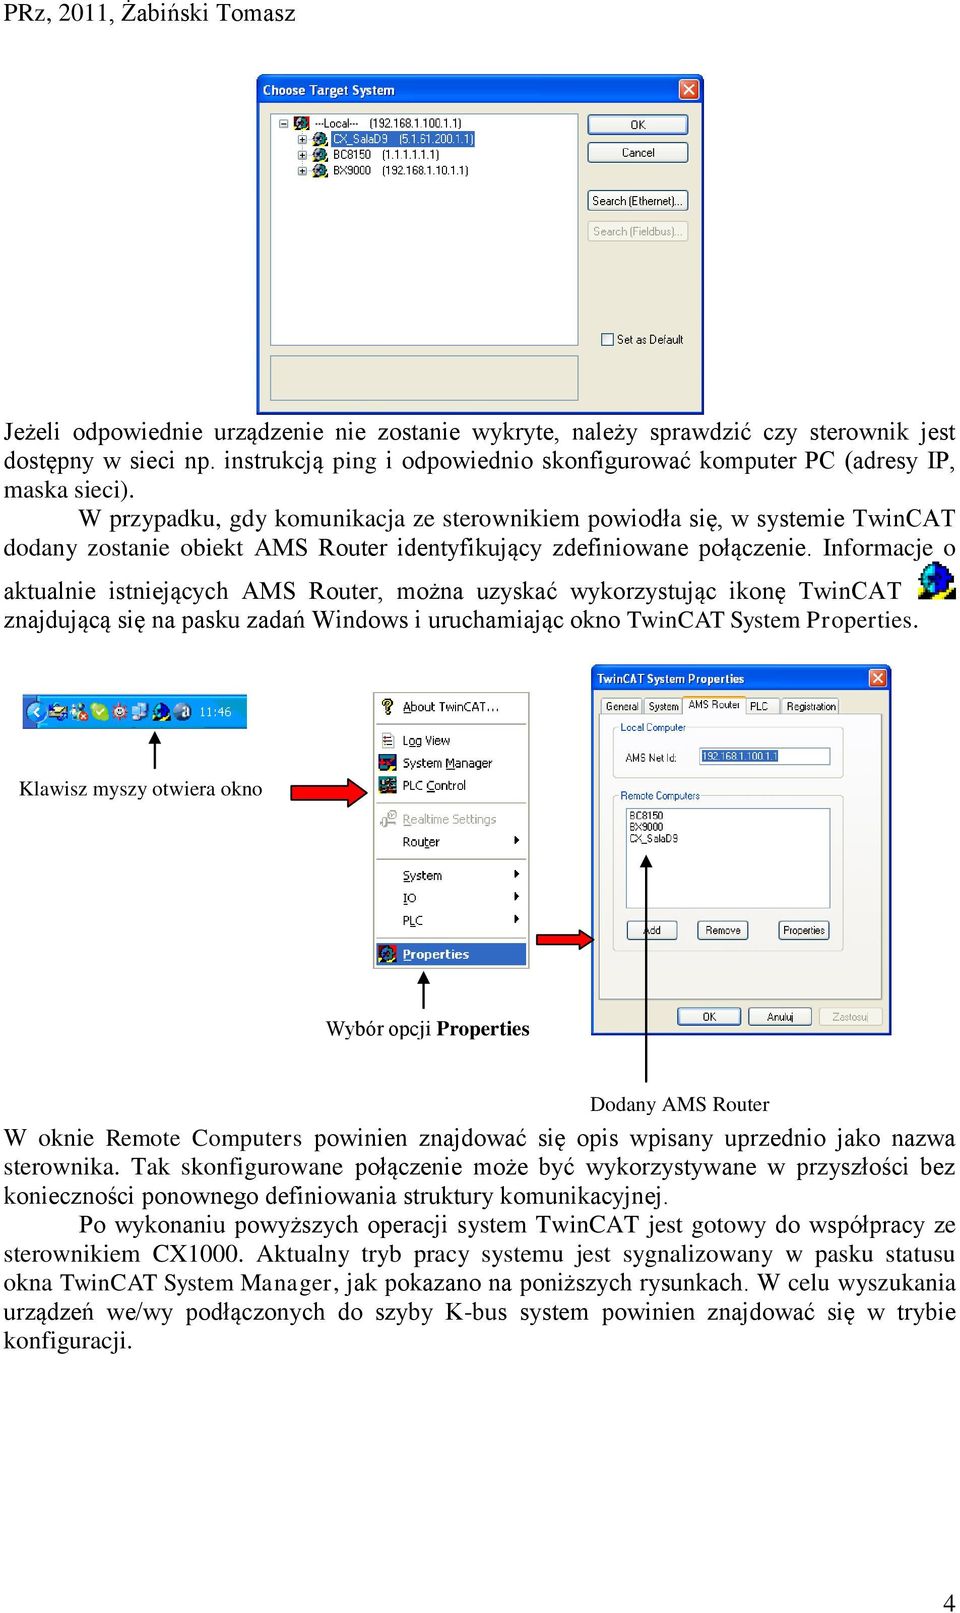 Informacje o aktualnie istniejących AMS Router, można uzyskać wykorzystując ikonę TwinCAT znajdującą się na pasku zadań Windows i uruchamiając okno TwinCAT System Properties.